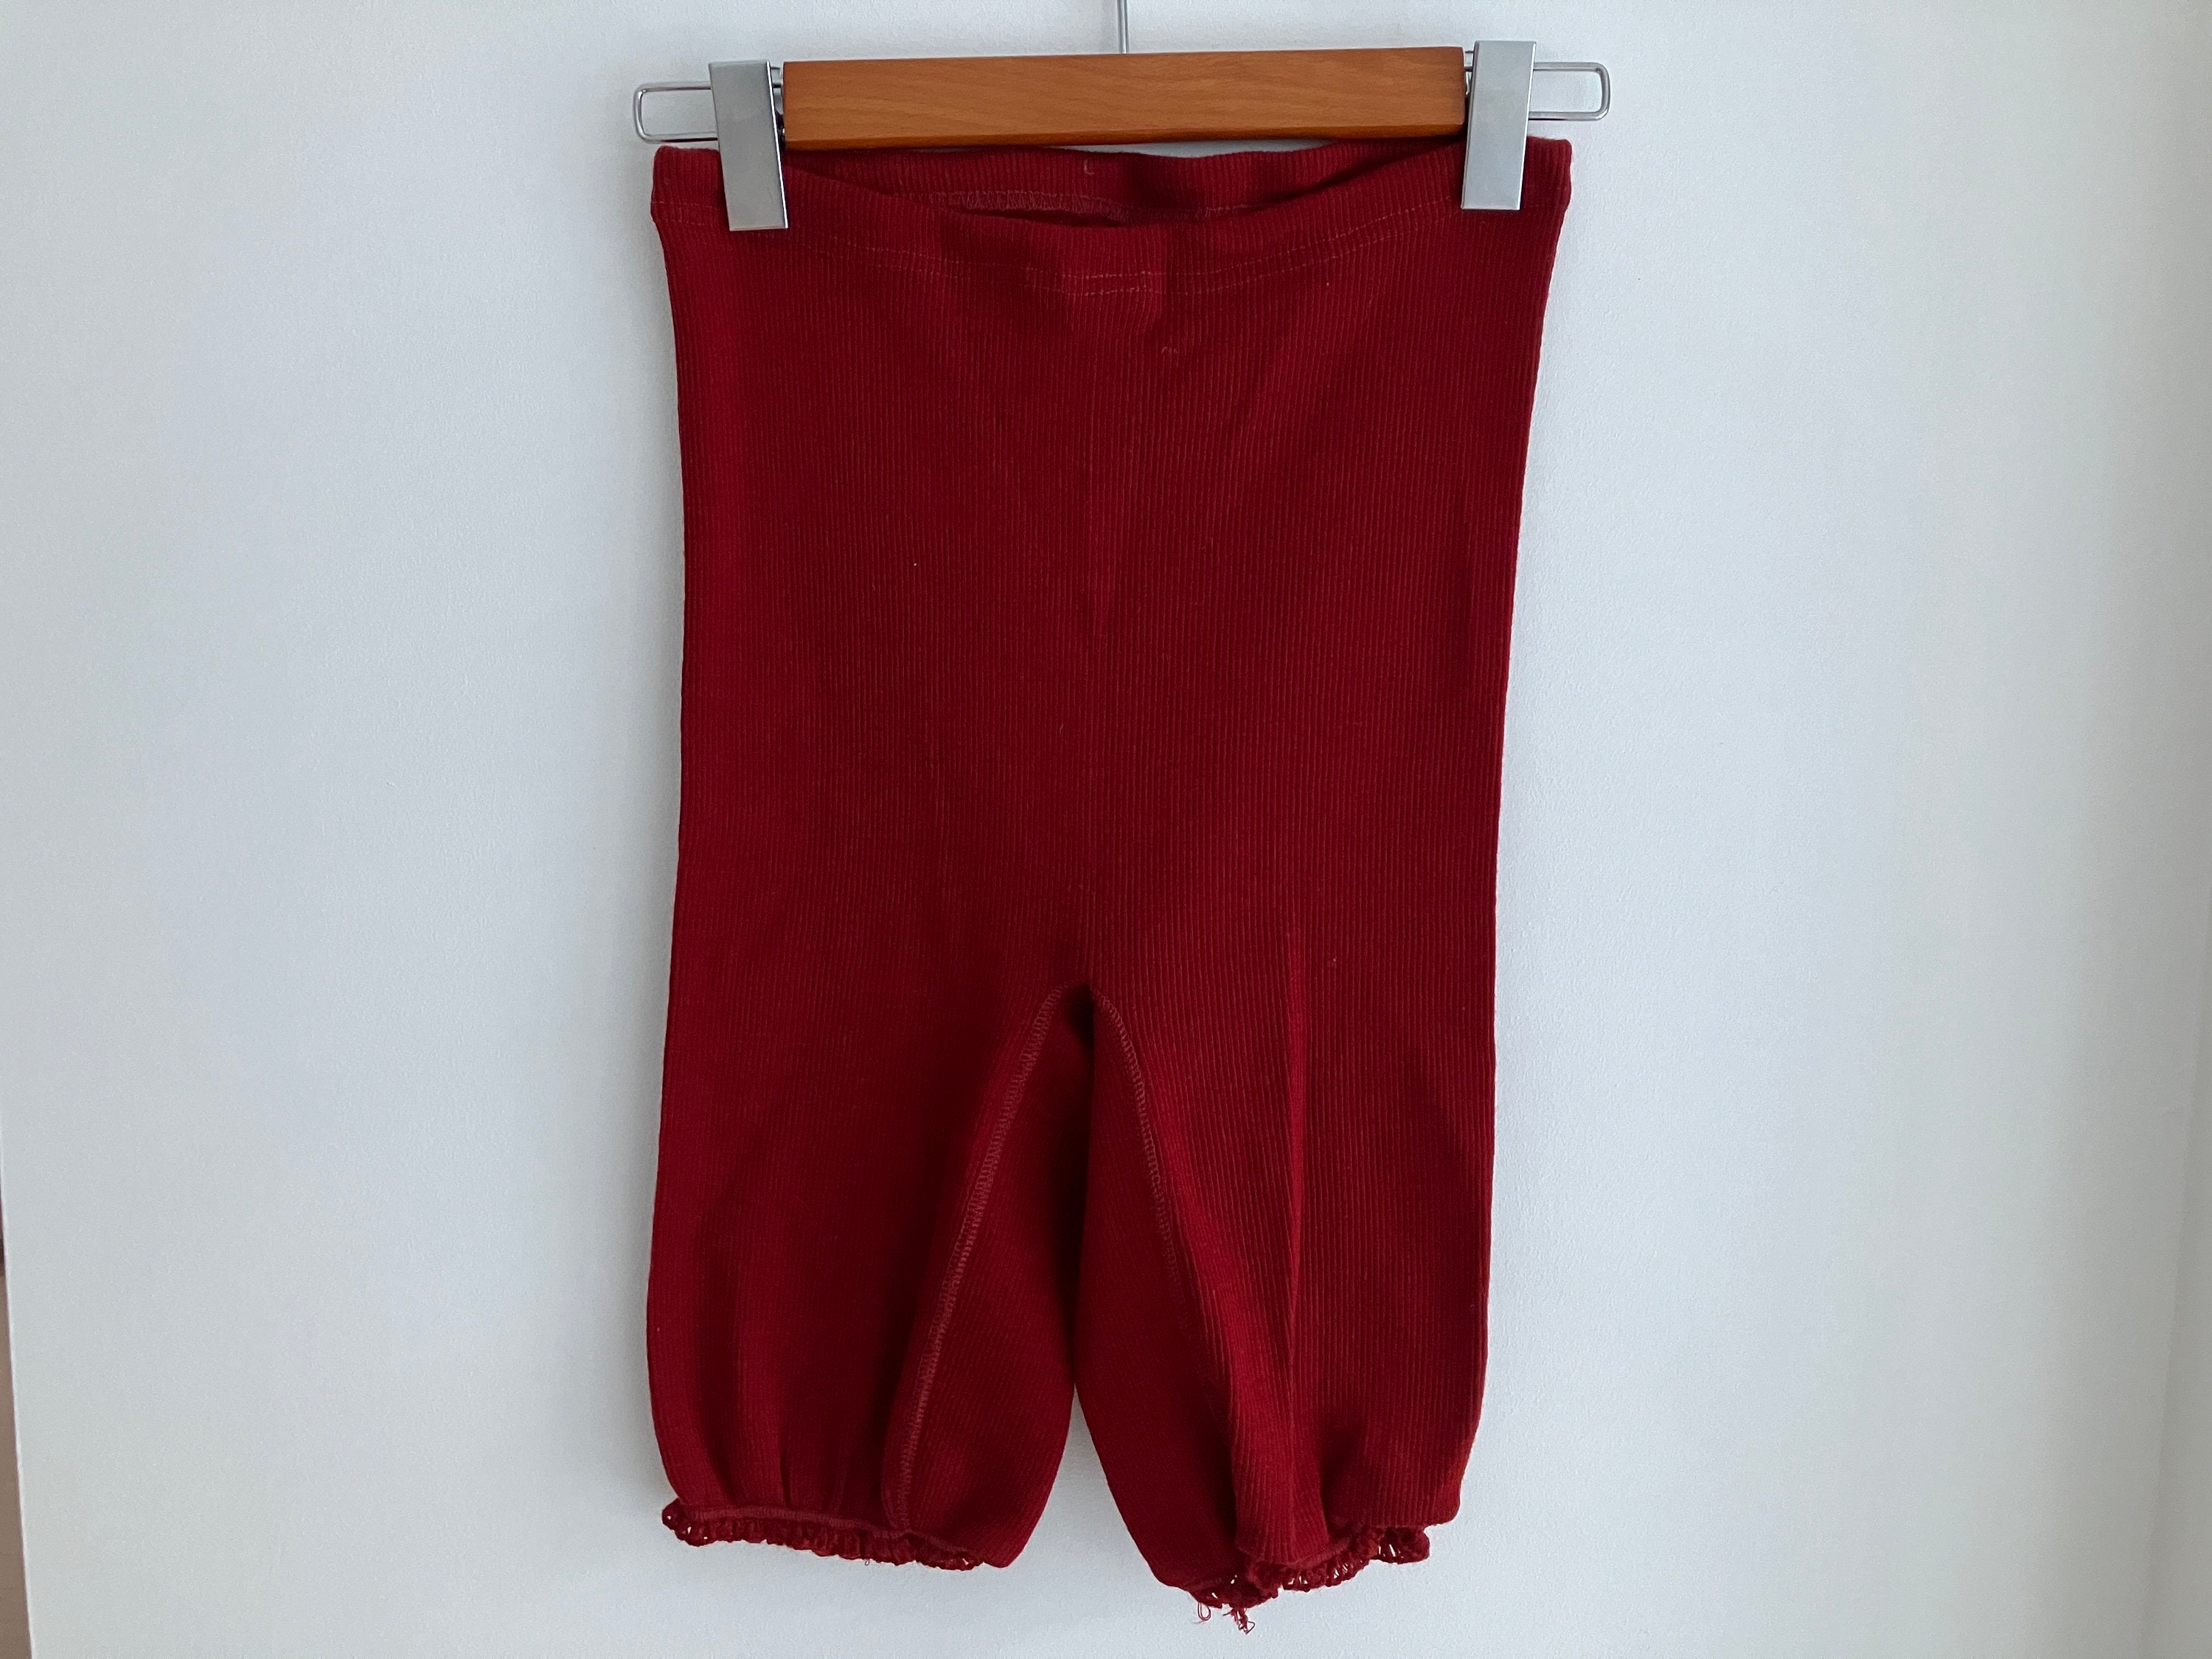 Former USSR Vintage + Hand Knit Handmade Underwear